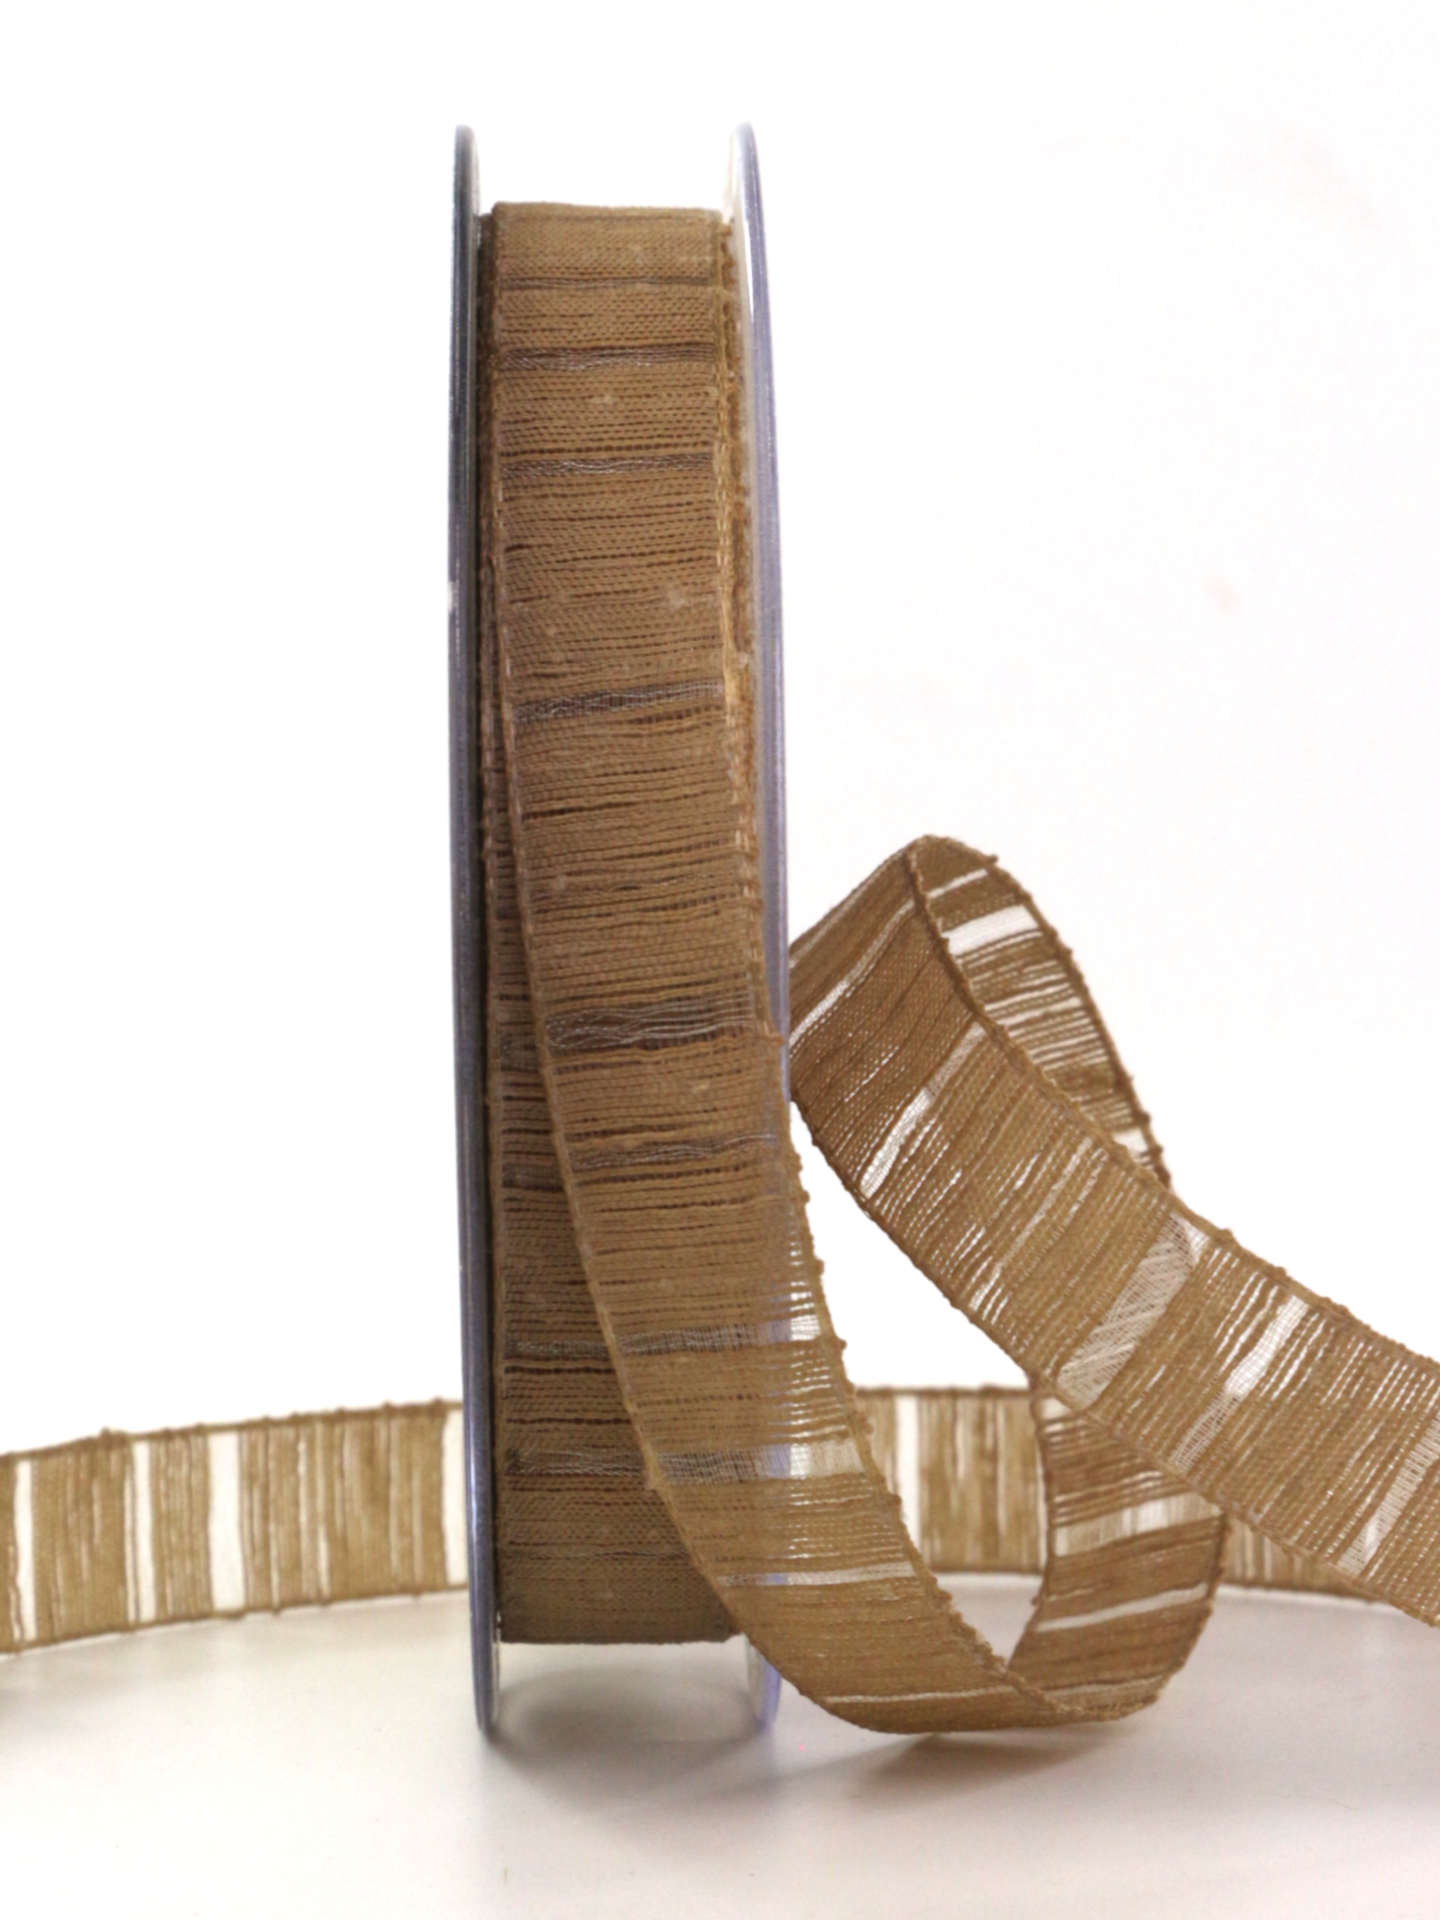 Deko- und Geschenkband mit Streifenmuster, braun, 15 mm breit, 20 m Rolle - geschenkband-einfarbig, dekoband, geschenkband